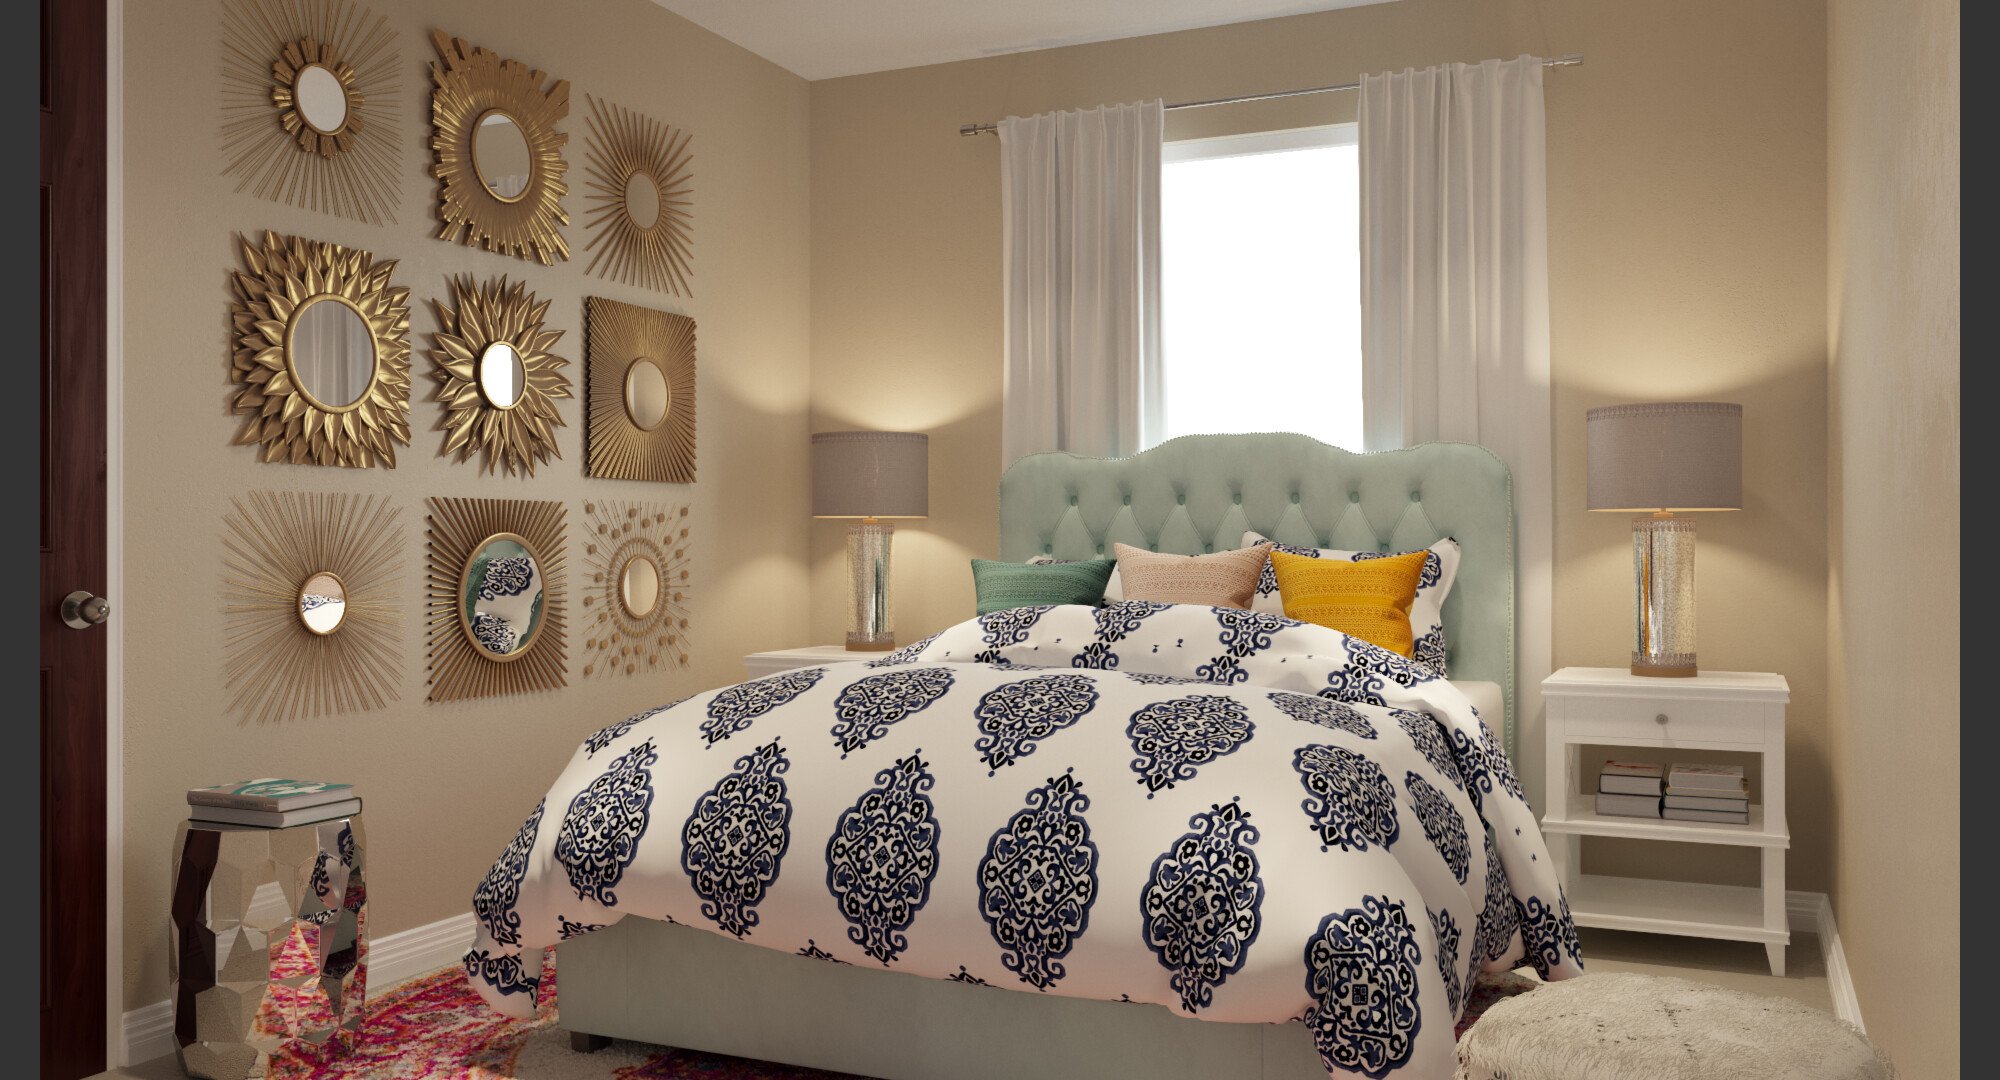 Online Bedroom Design online interior designers